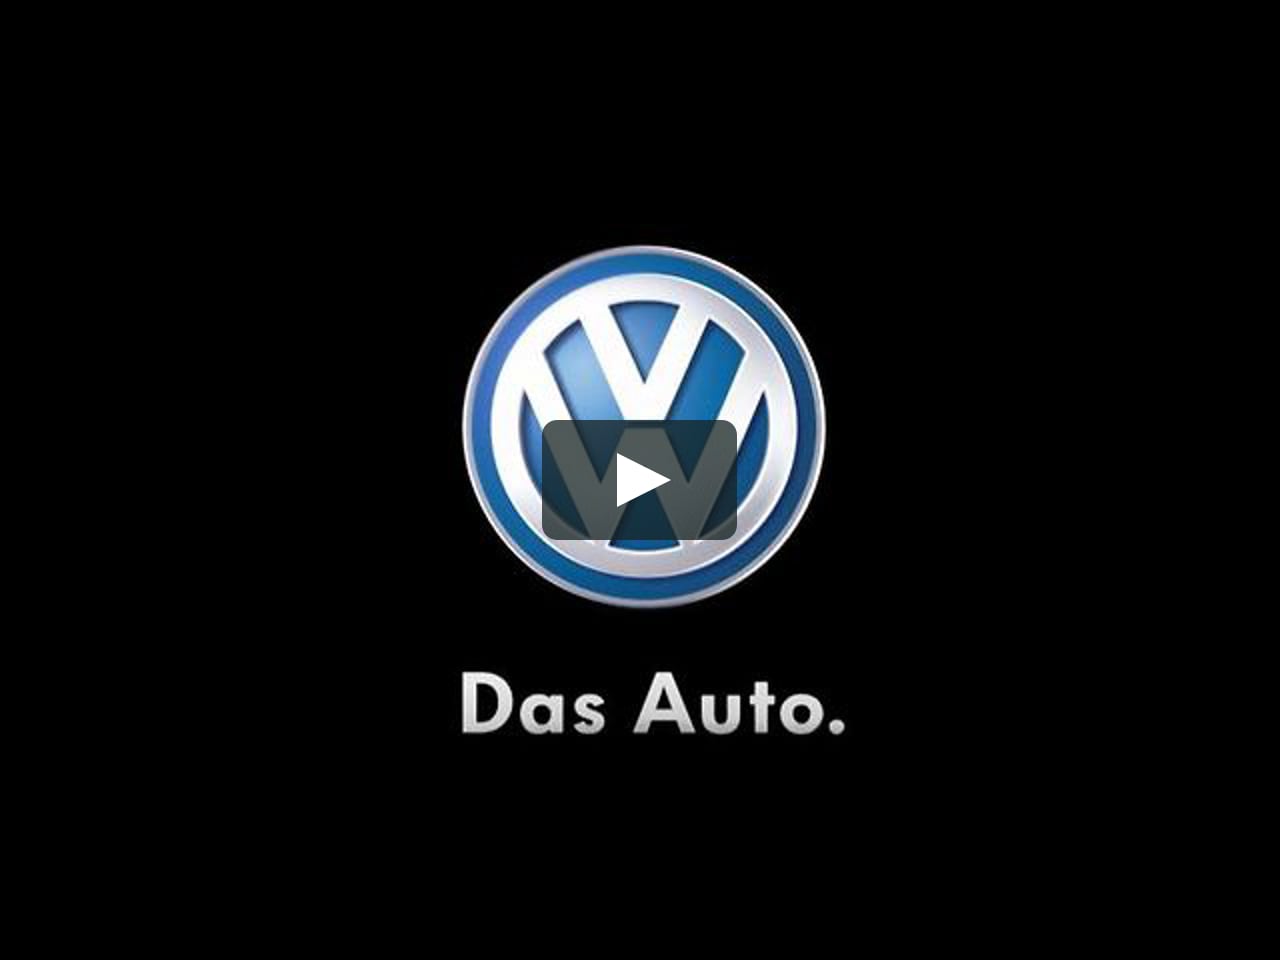 Volkswagen das auto реклама